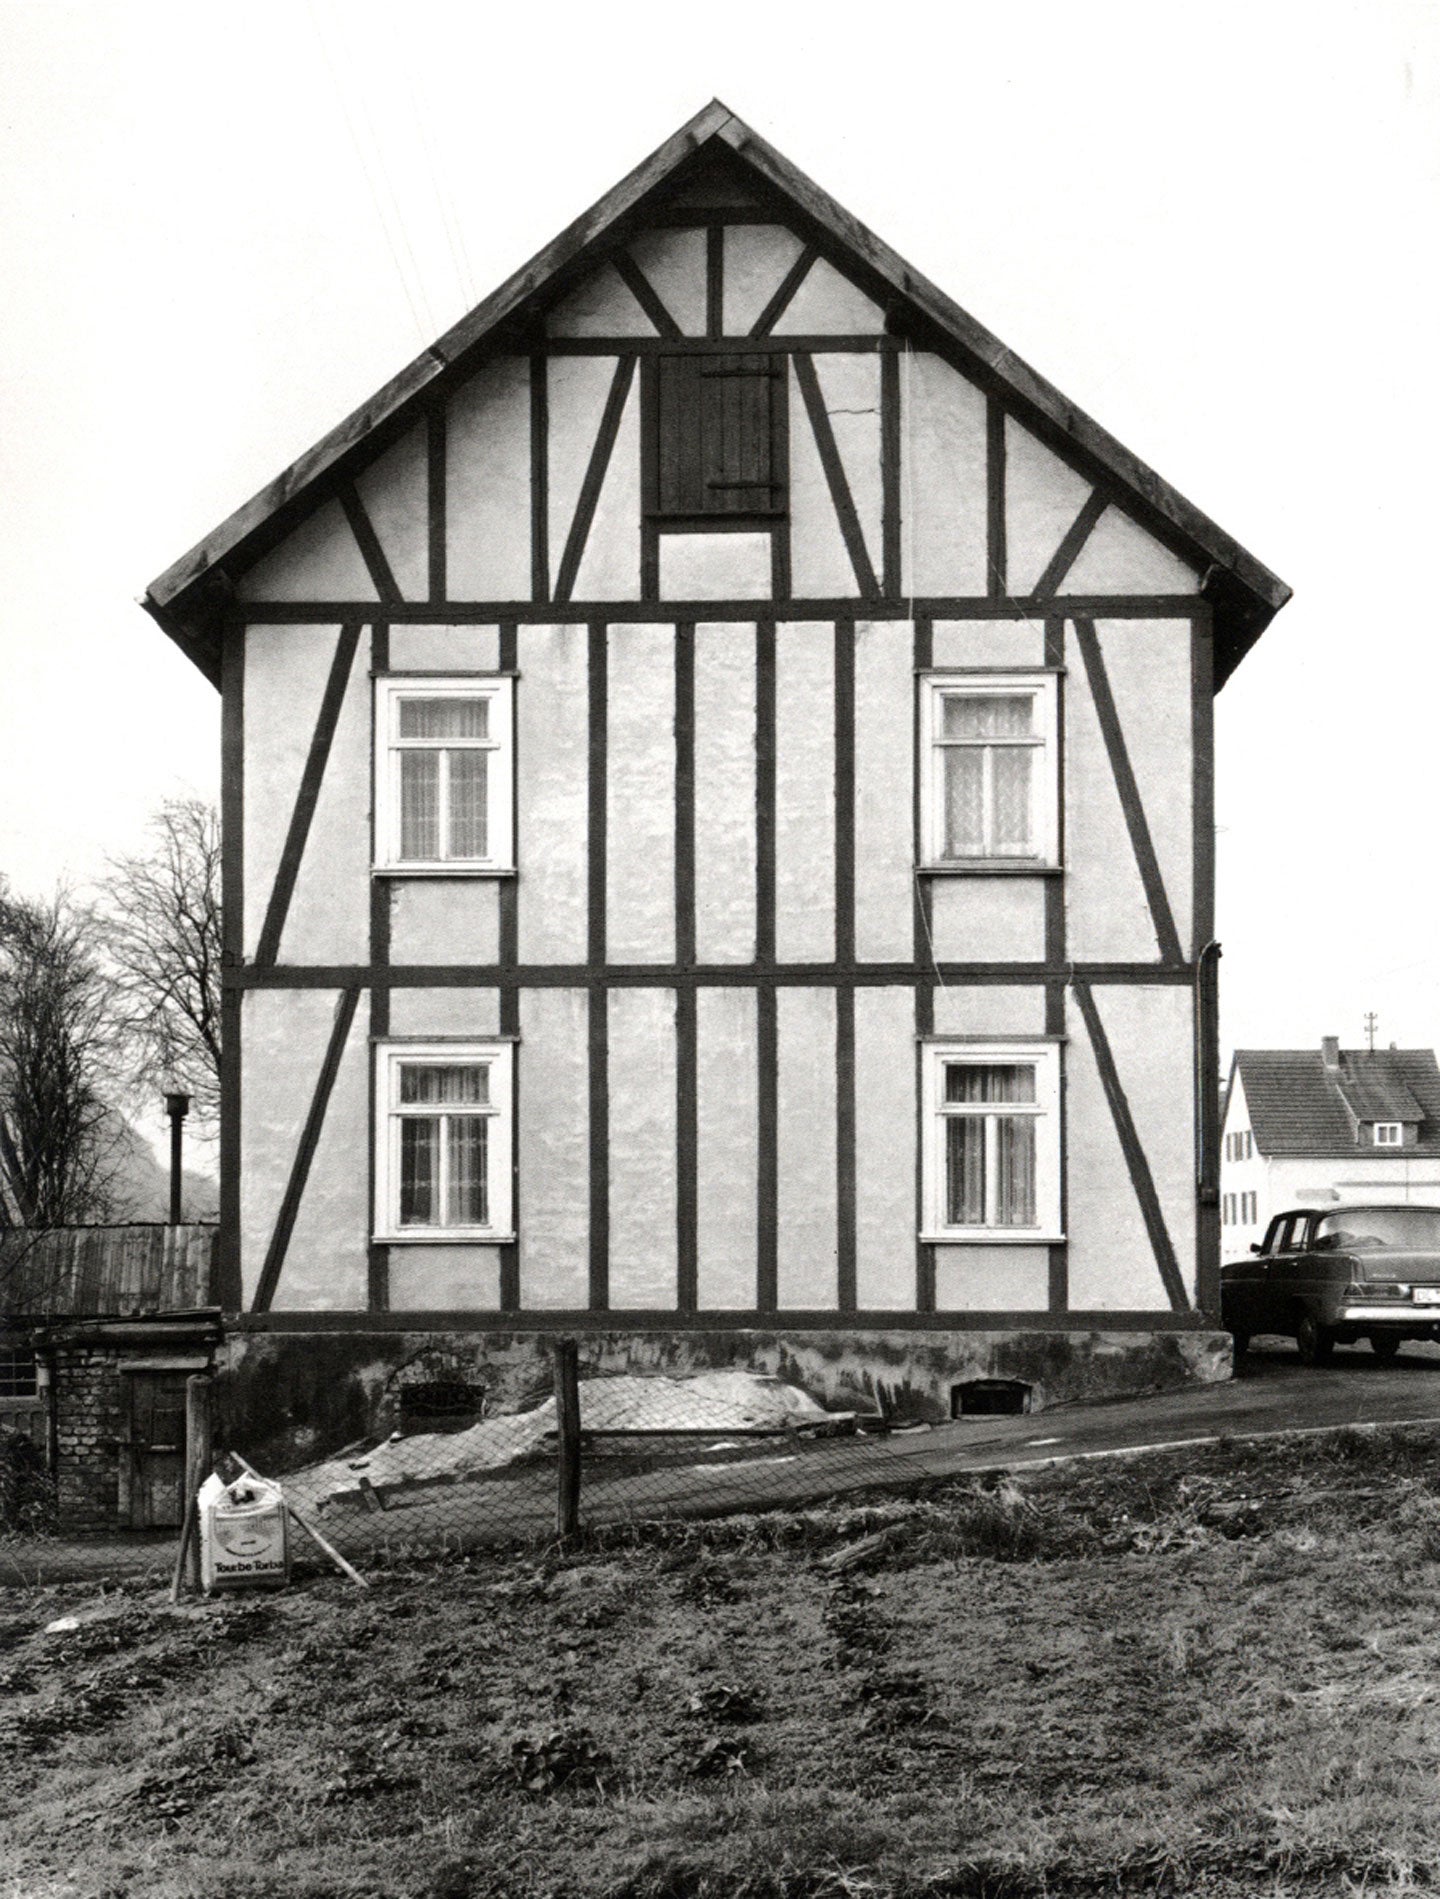 Bernd und Hilla Becher: Fachwerkhäuser des Siegener Industriegebietes (Framework Houses of the Siegen Industrial Region) [SIGNED (Upside Down)]